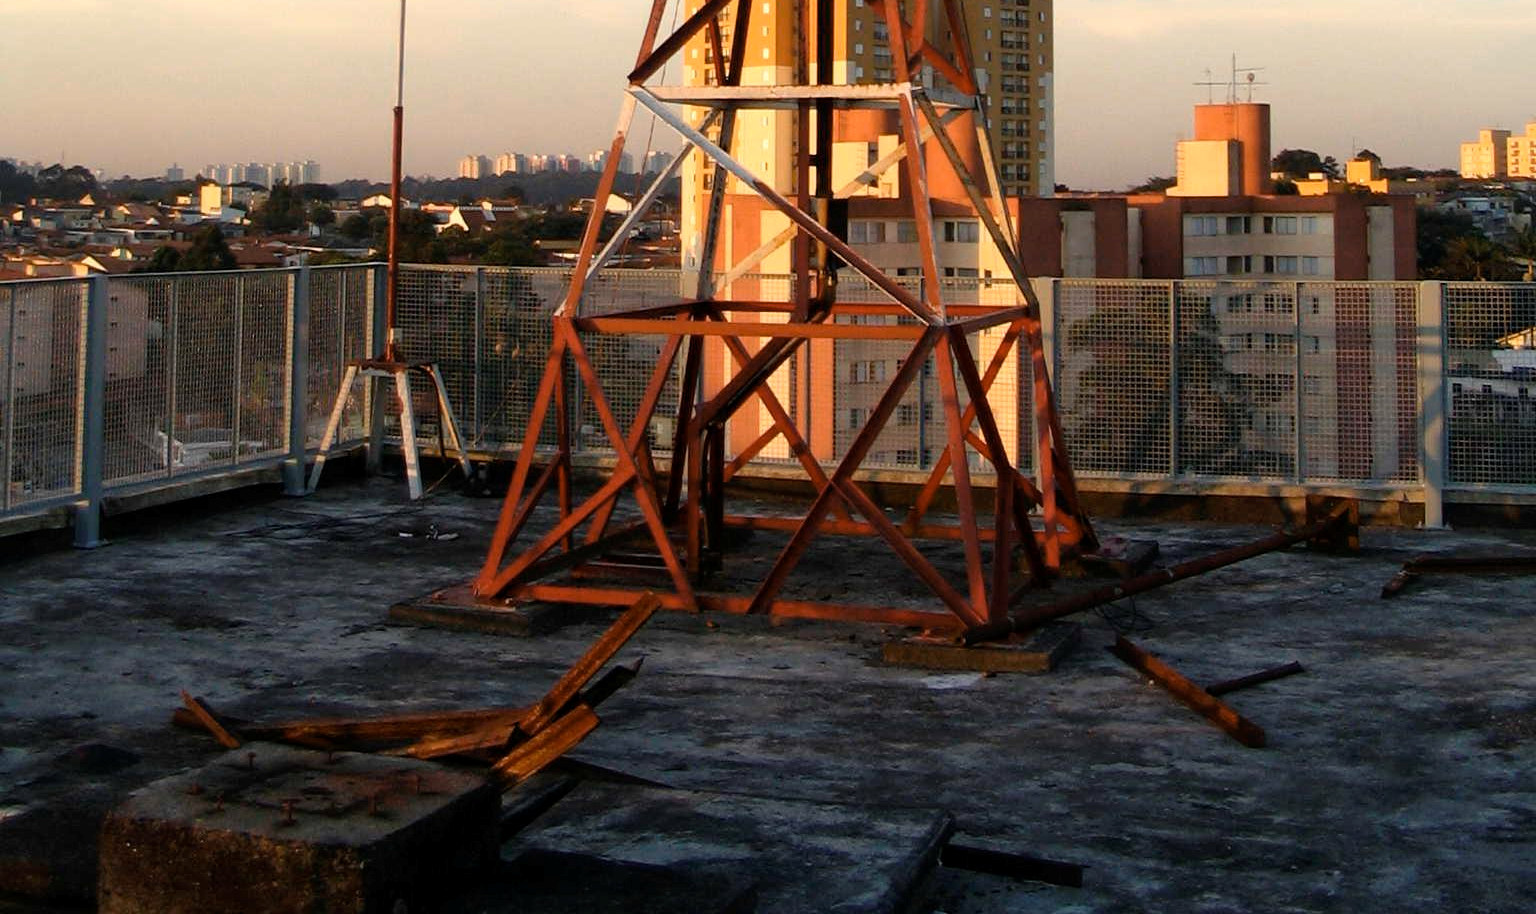 câmera espelho (a)vista lateral (b)vista superior (c) Câmera instalada no topo da torre Figura 8. A câmera omnidirecional catadióptrica construída. Pode-se ver a câmera de vídeo no topo.